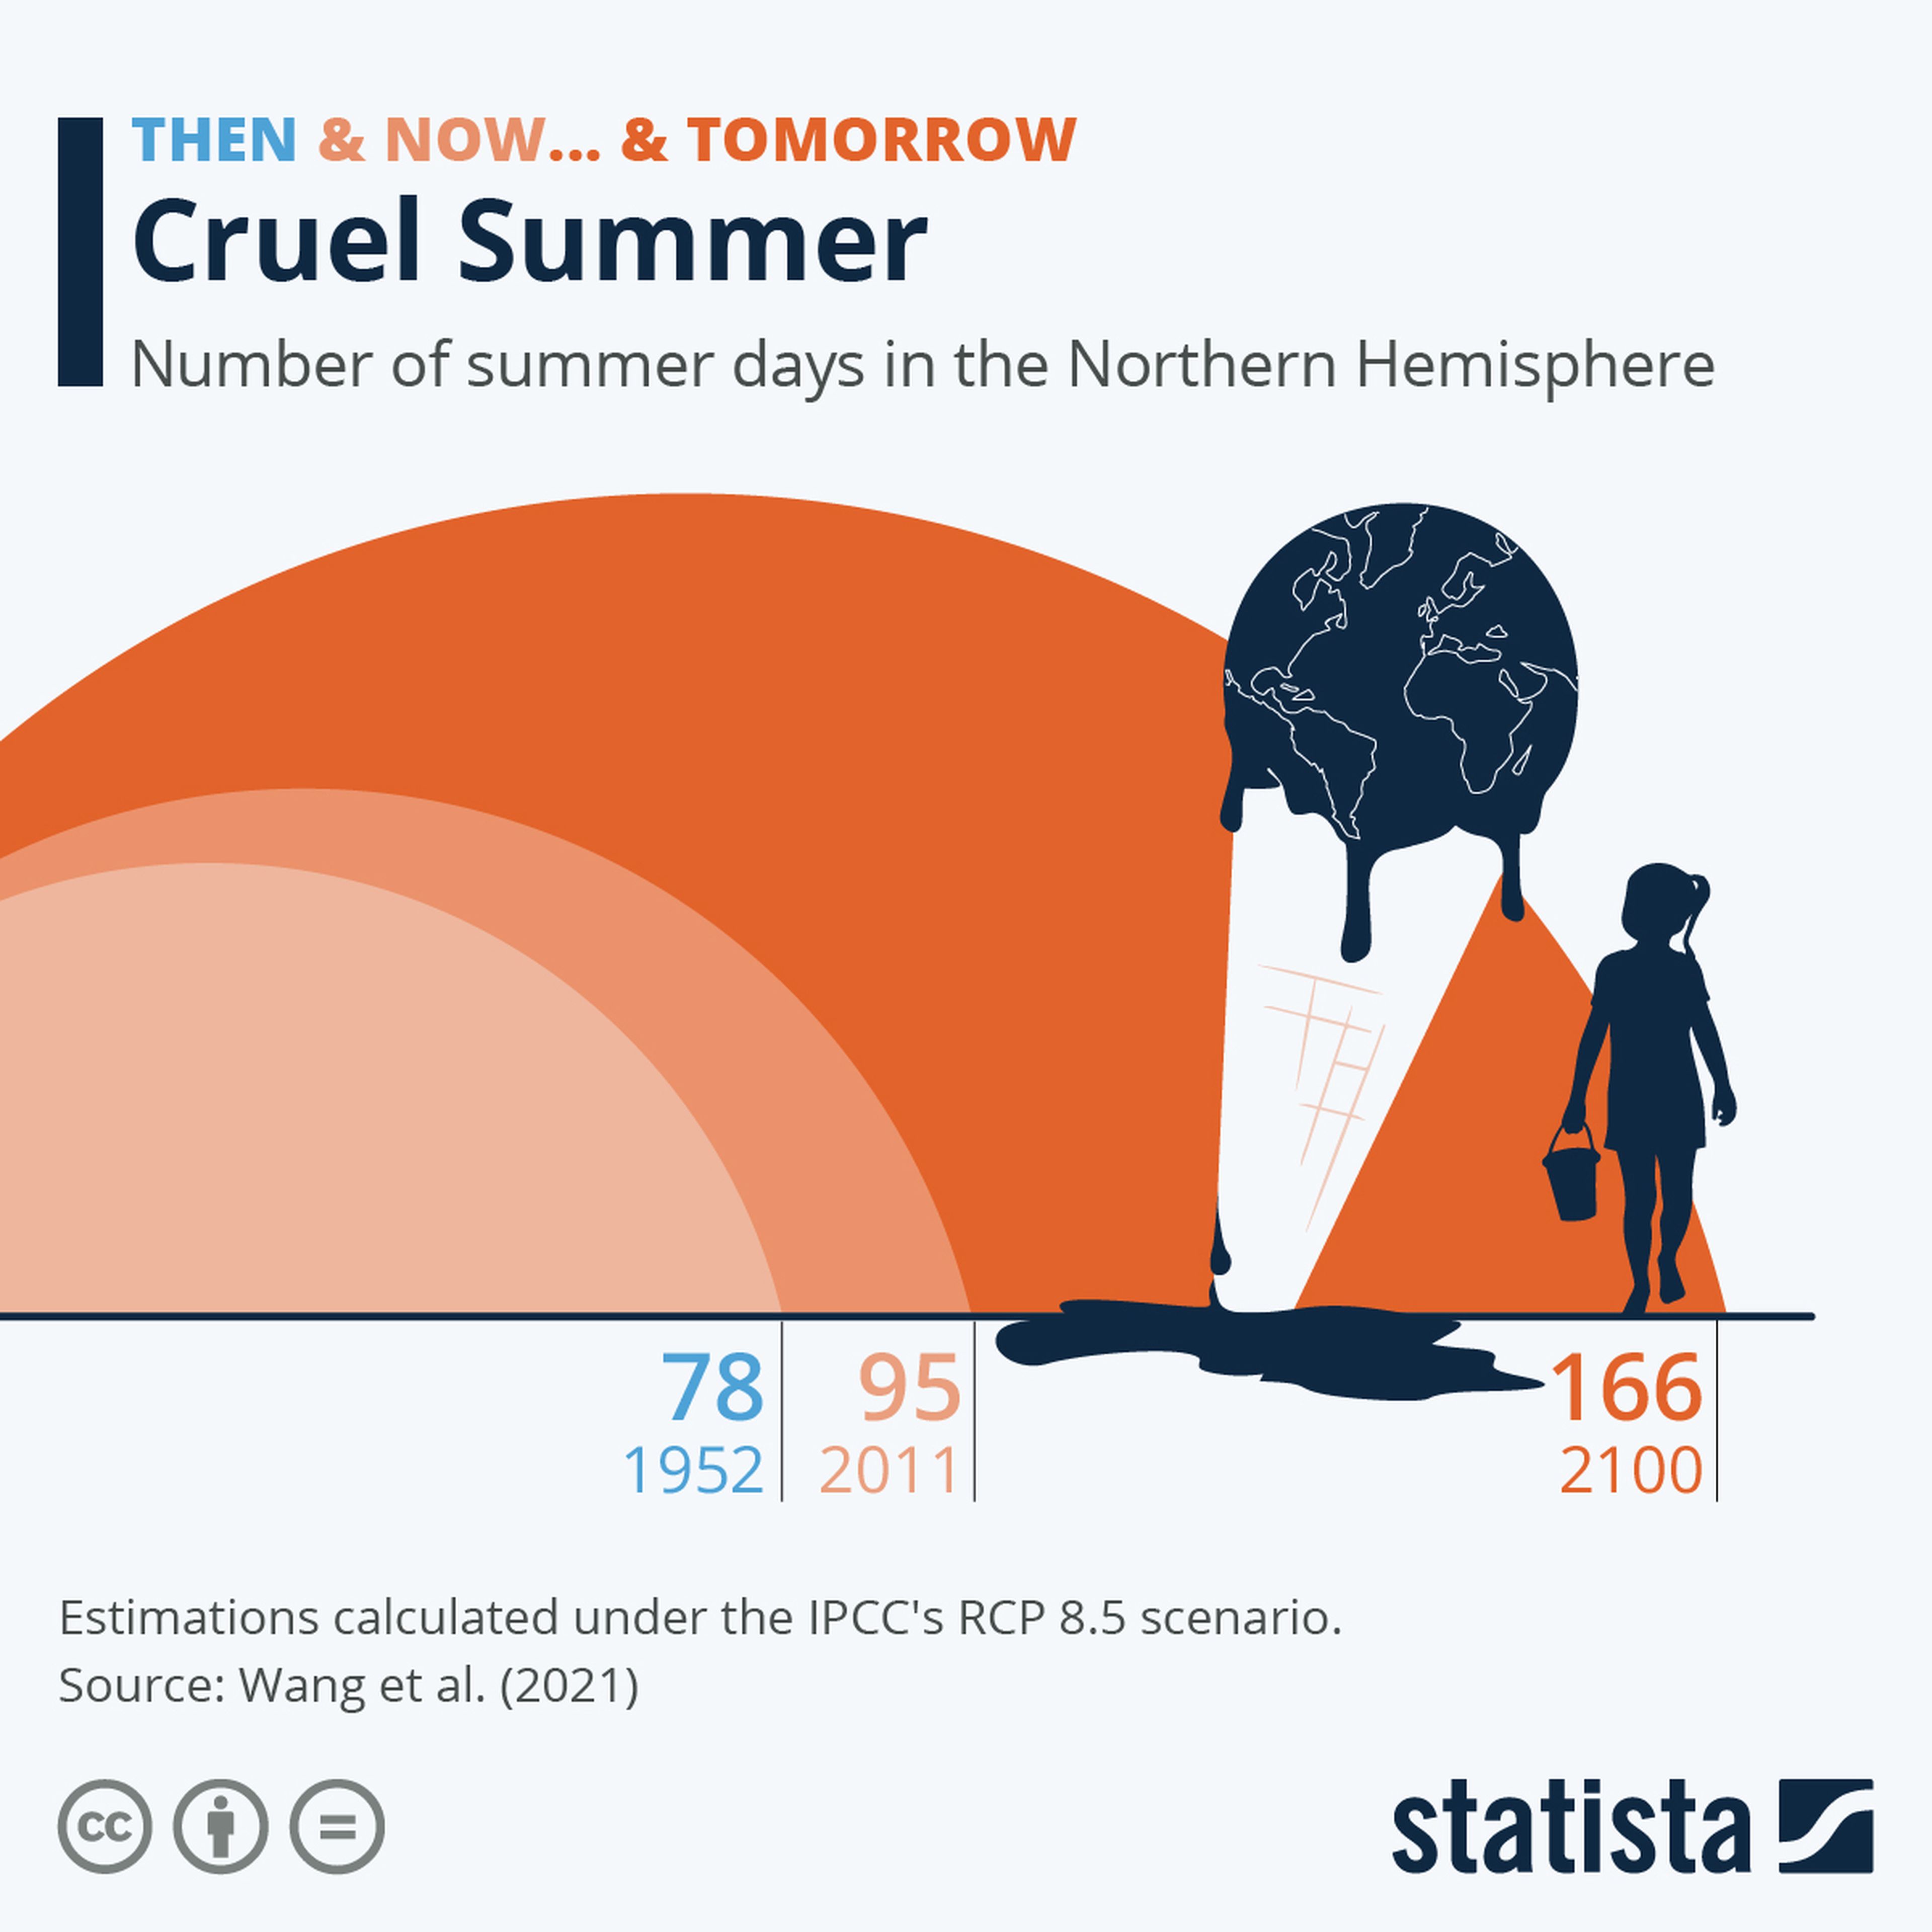 En el peor de los escenarios climáticos, el verano podría durar 6 meses para el año 2100.